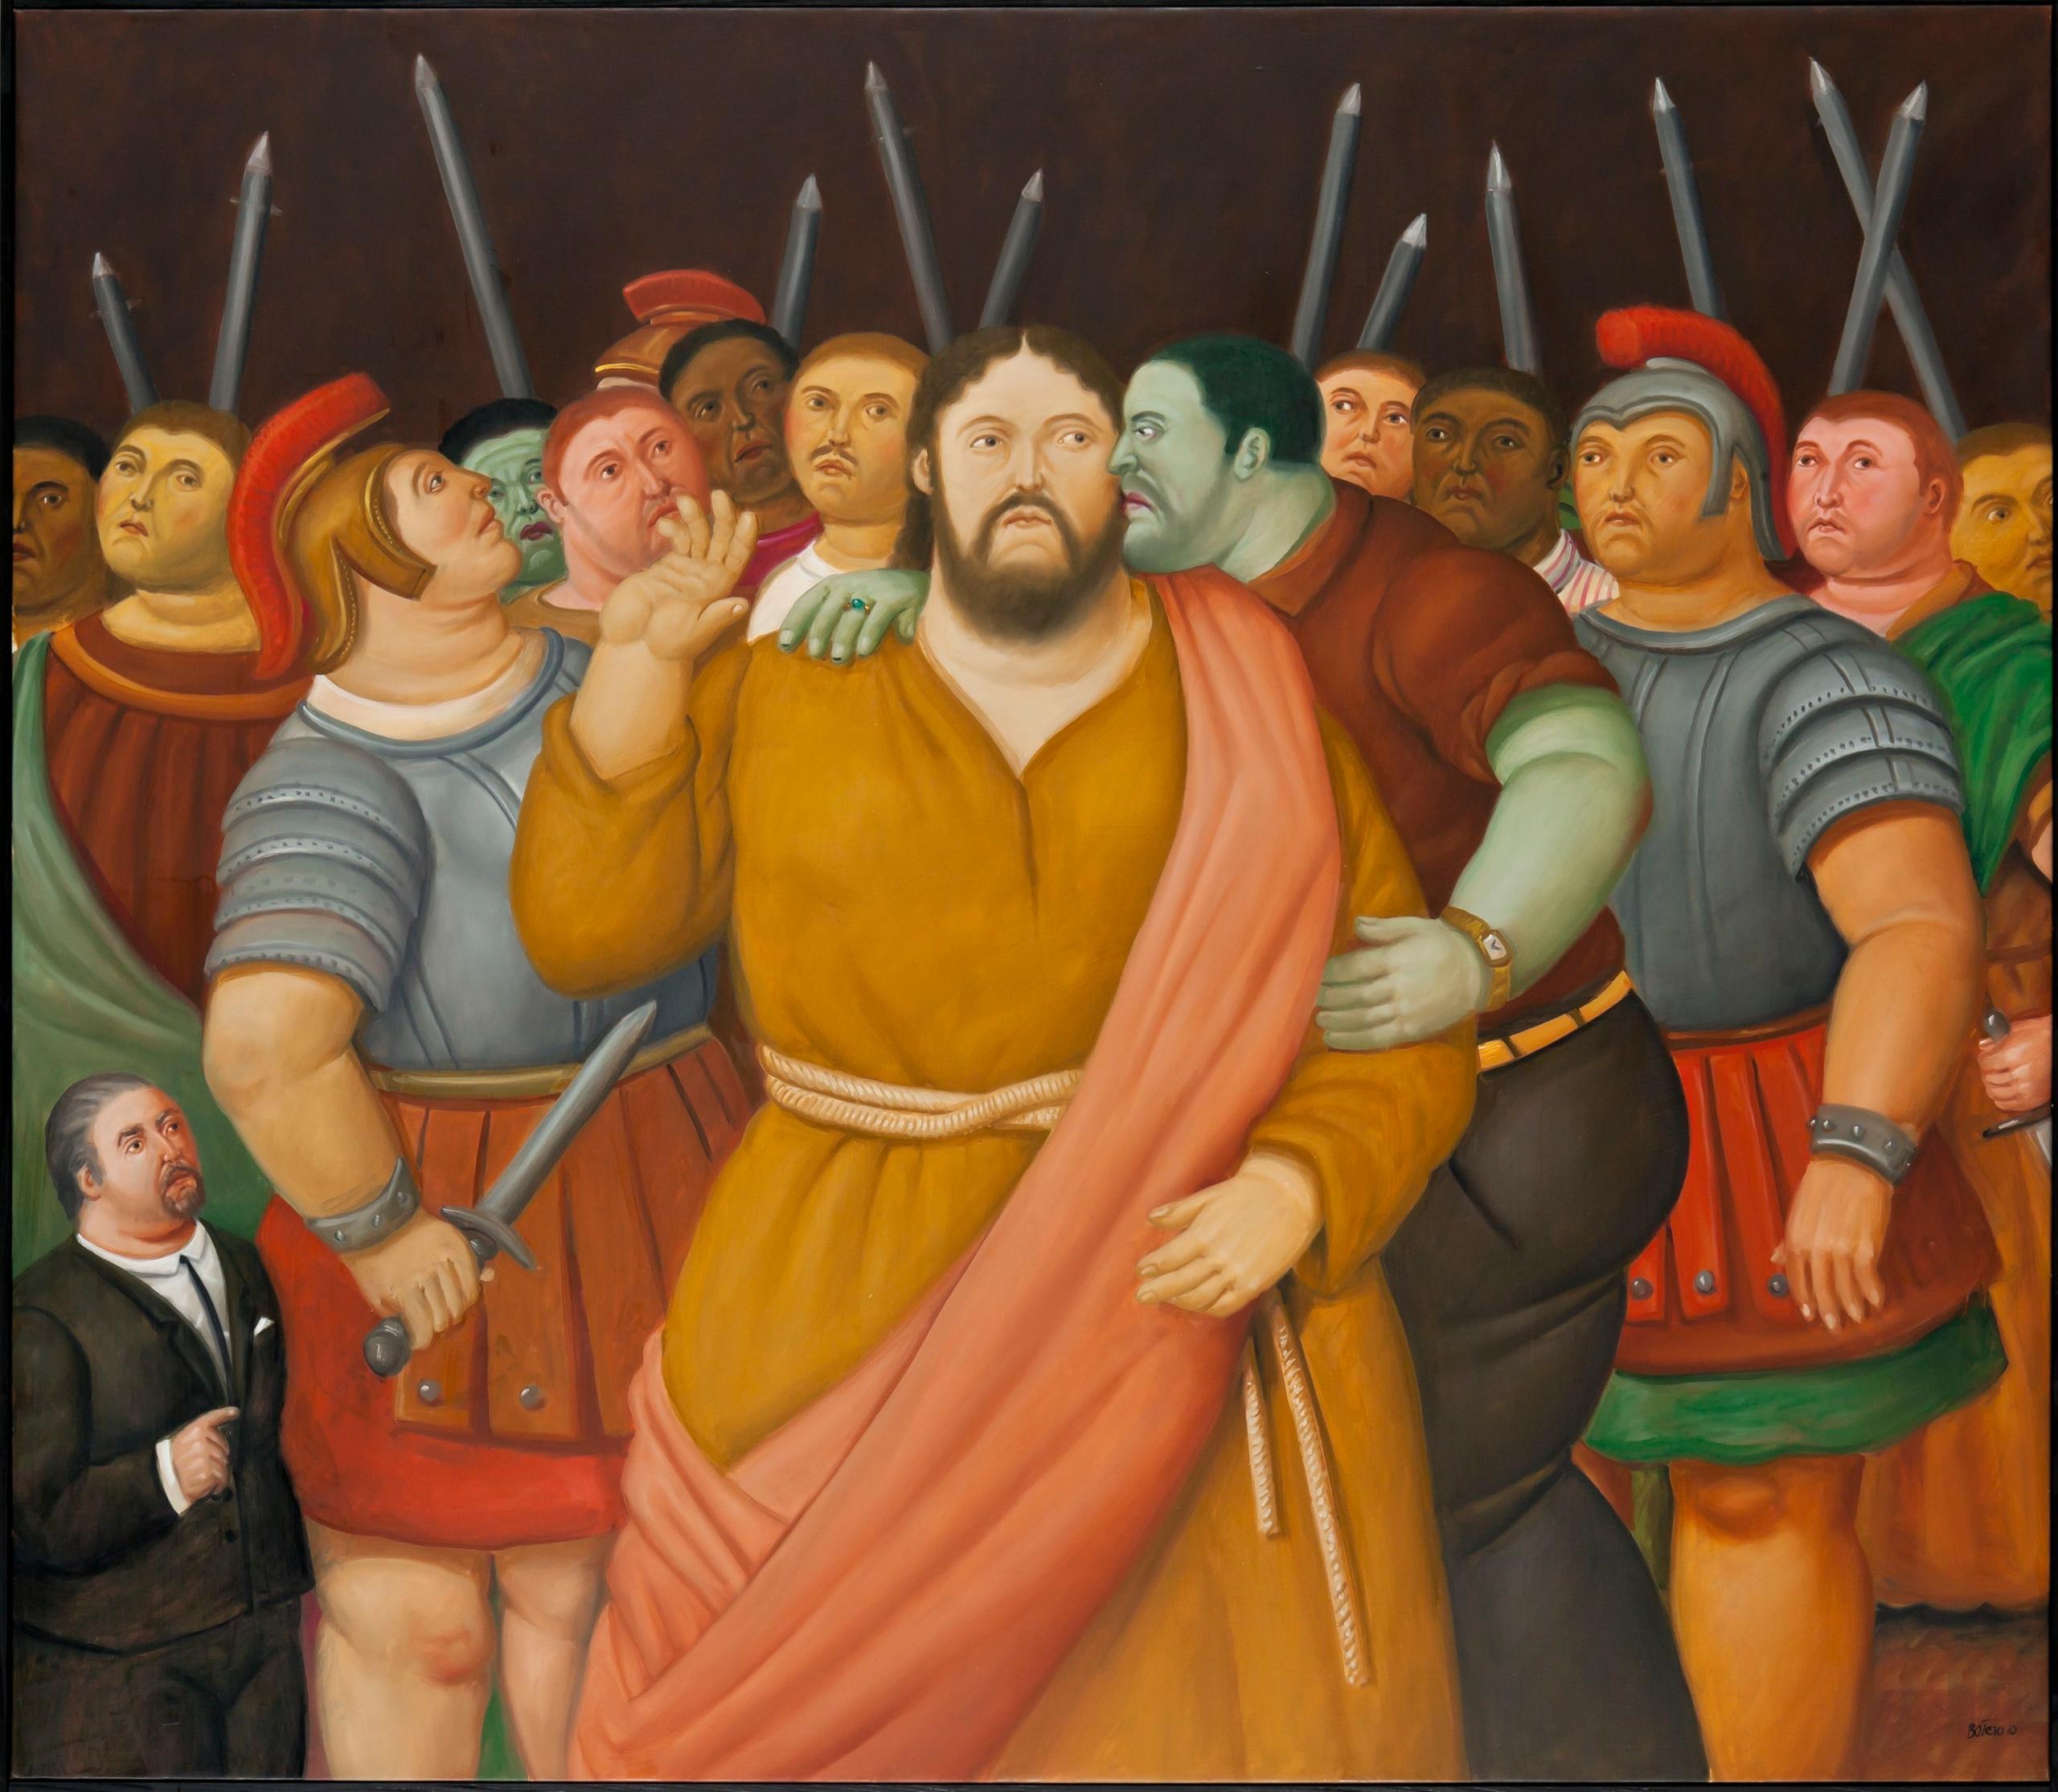 Al museo della Permanente arriva "Via Crucis", la mostra postuma di Botero